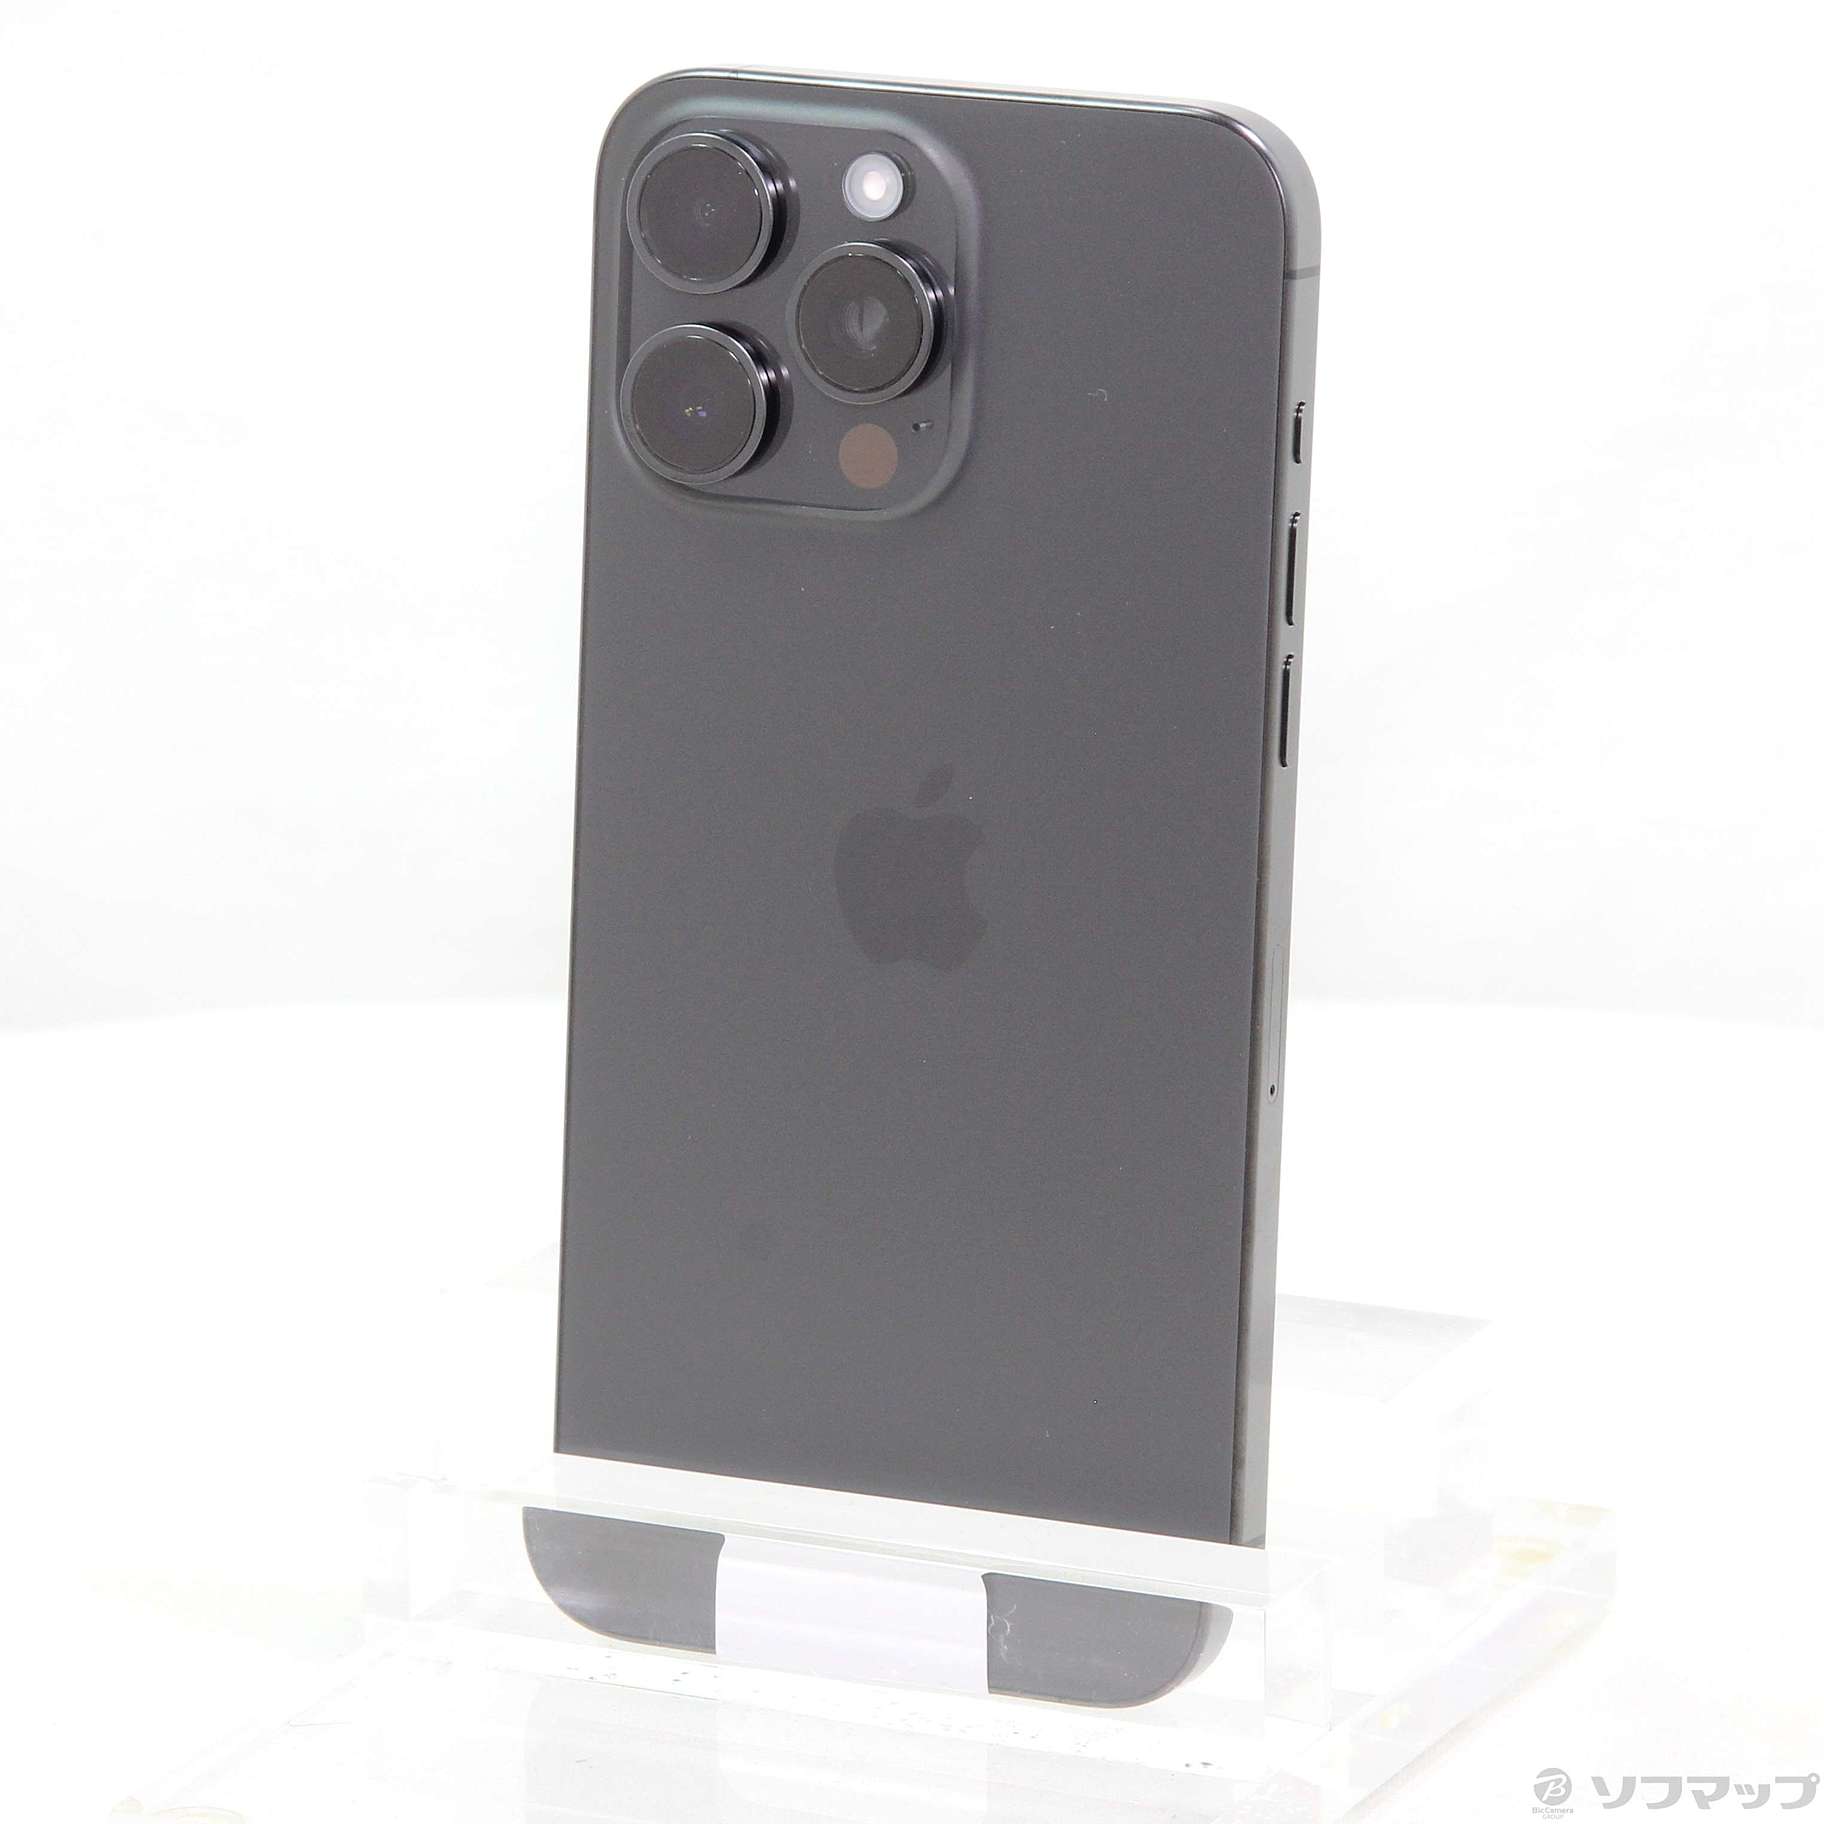 新品未開封 iPhone15 ProMax 256GB ブラックチタニウム